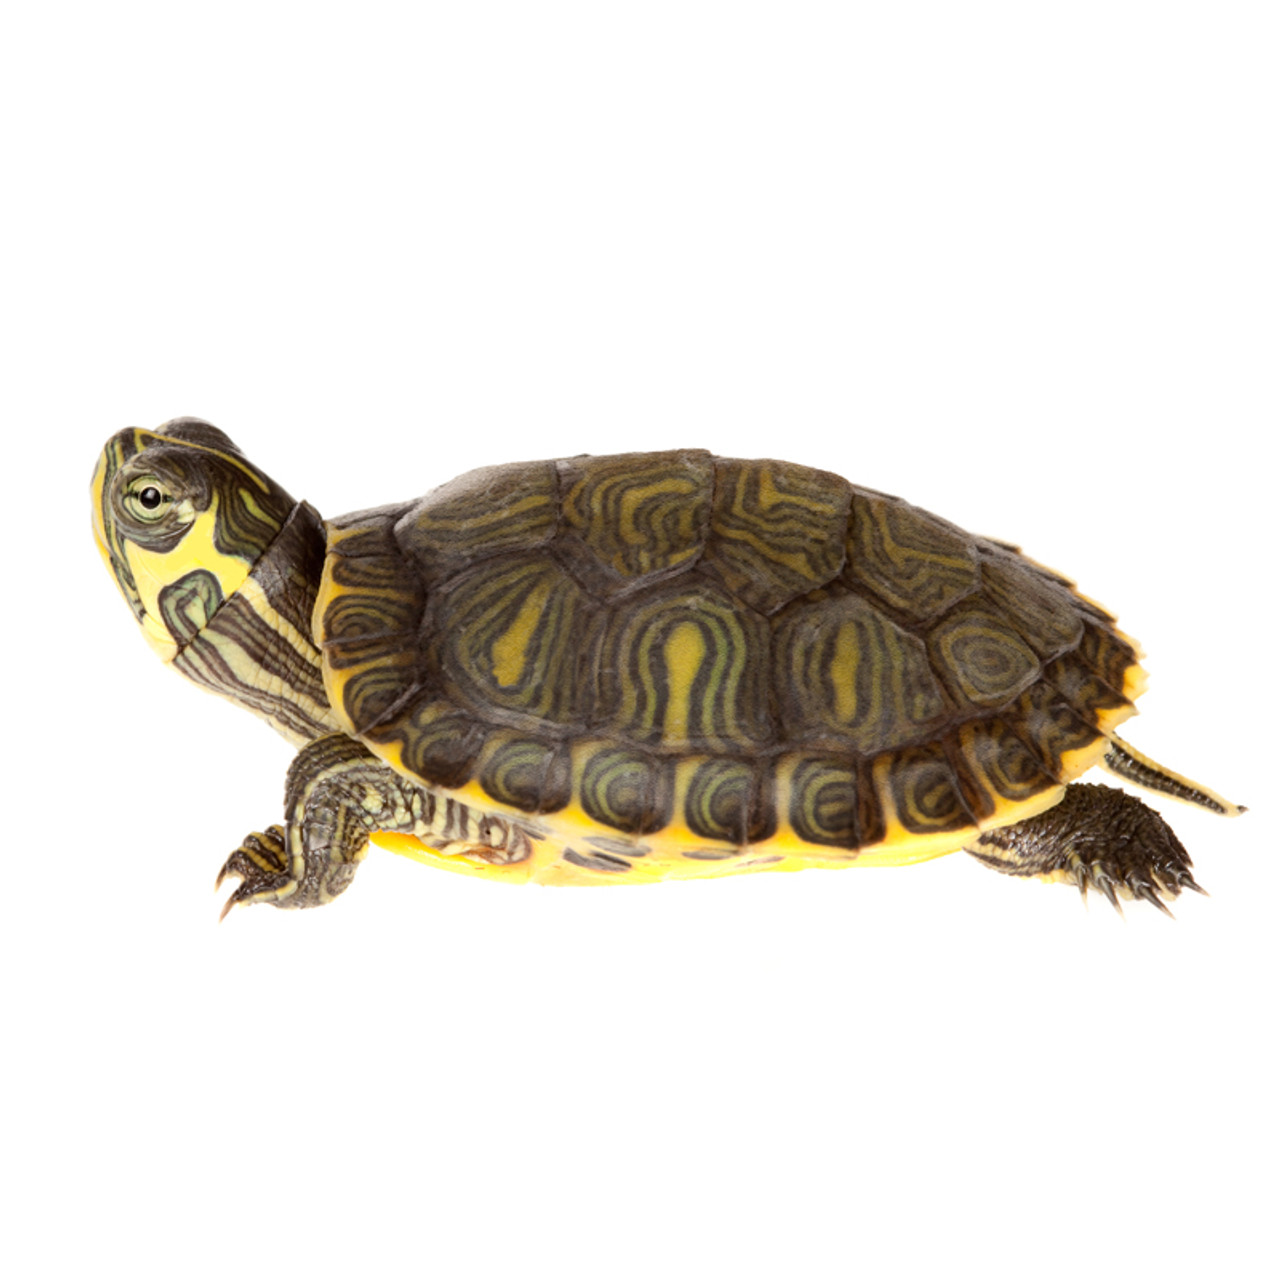 juvenile Cumberland Slider Turtle